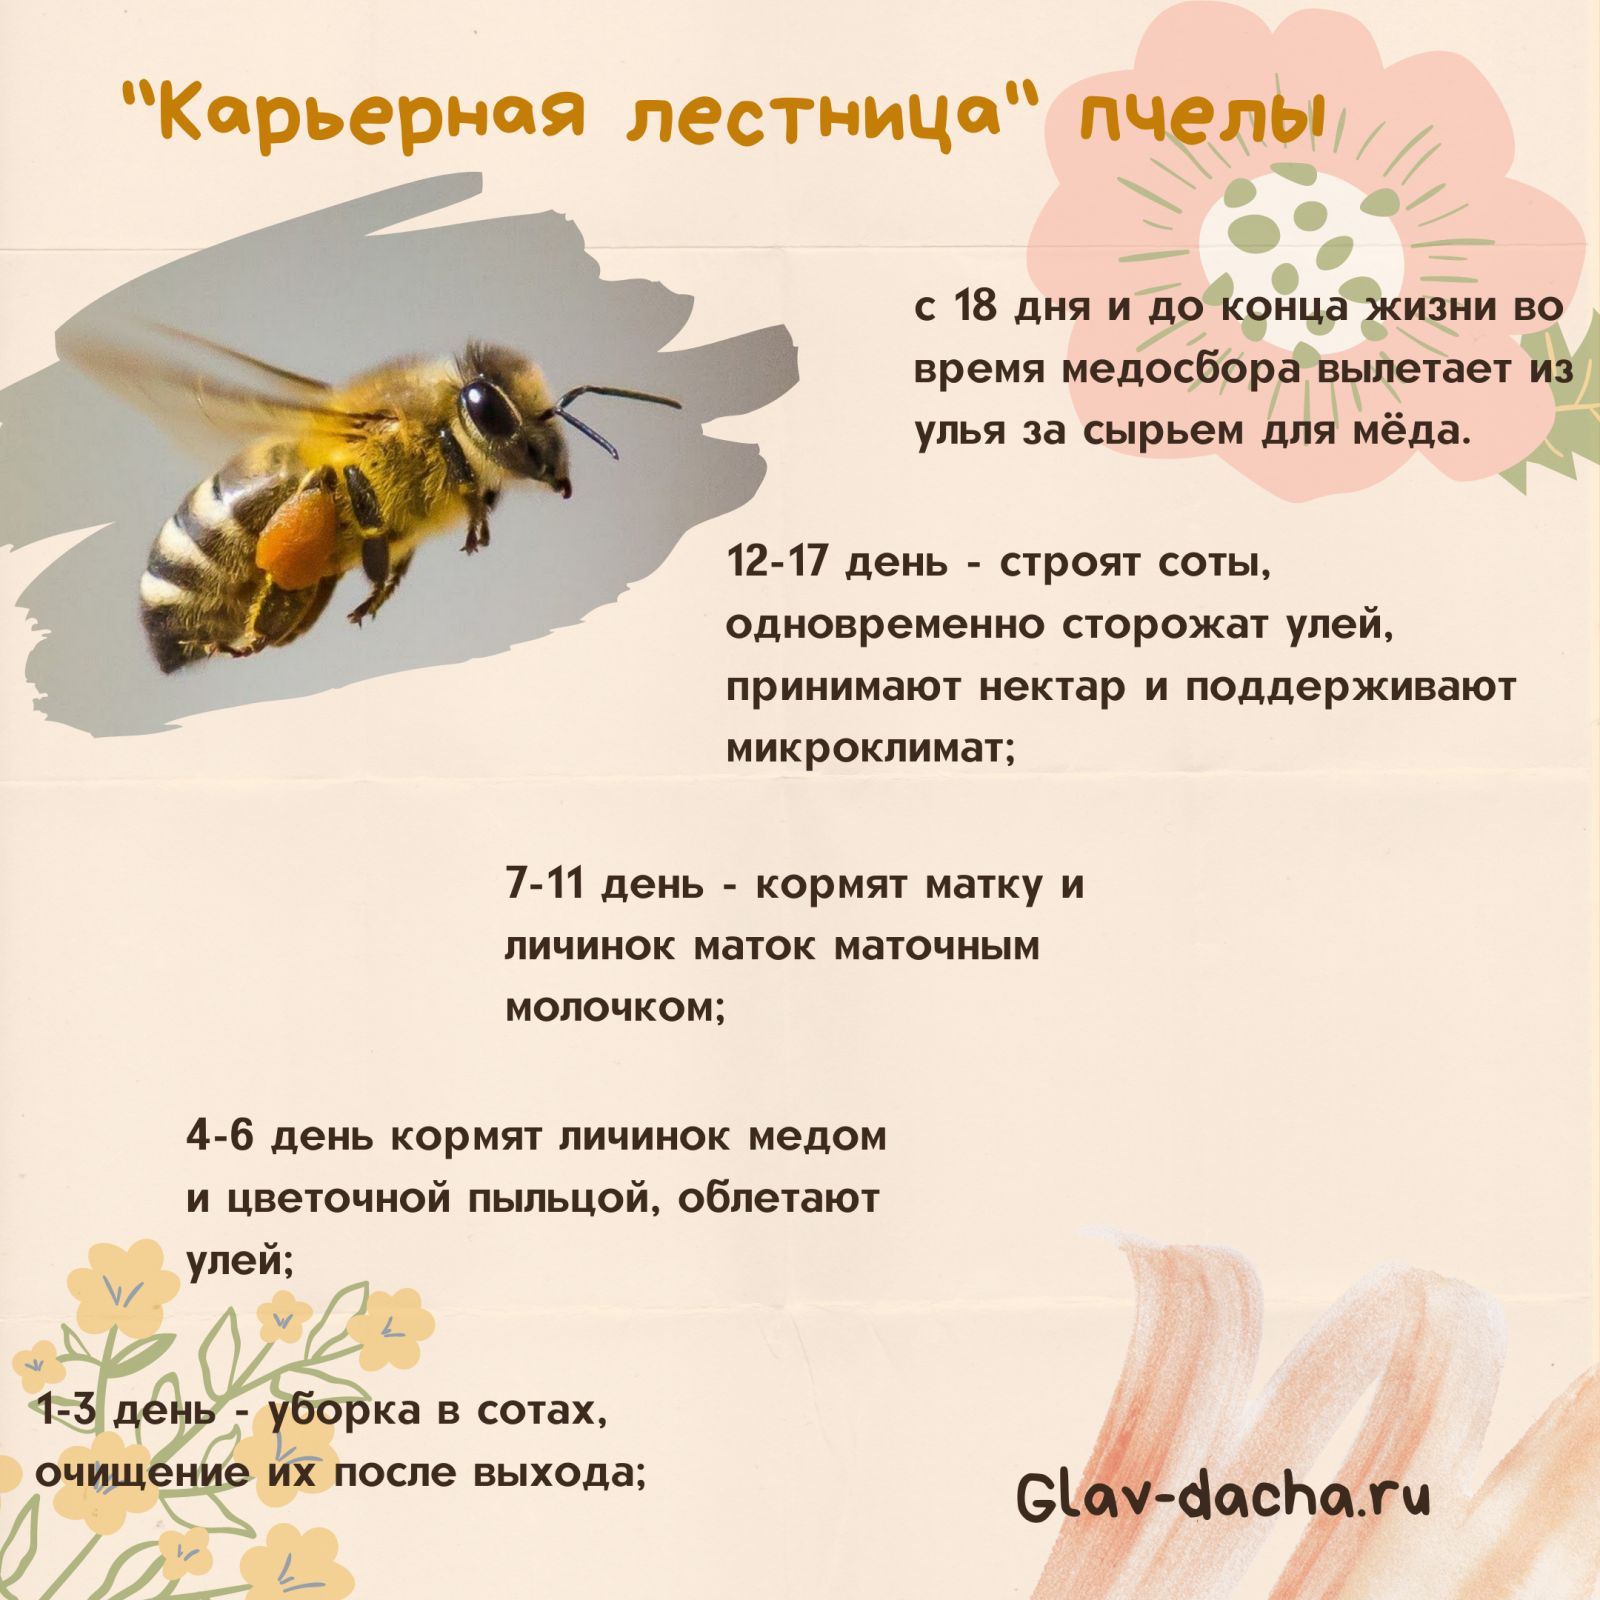 Способы размножения пчел: естественное и искусственное,сроки, сколько дней выводится пчела